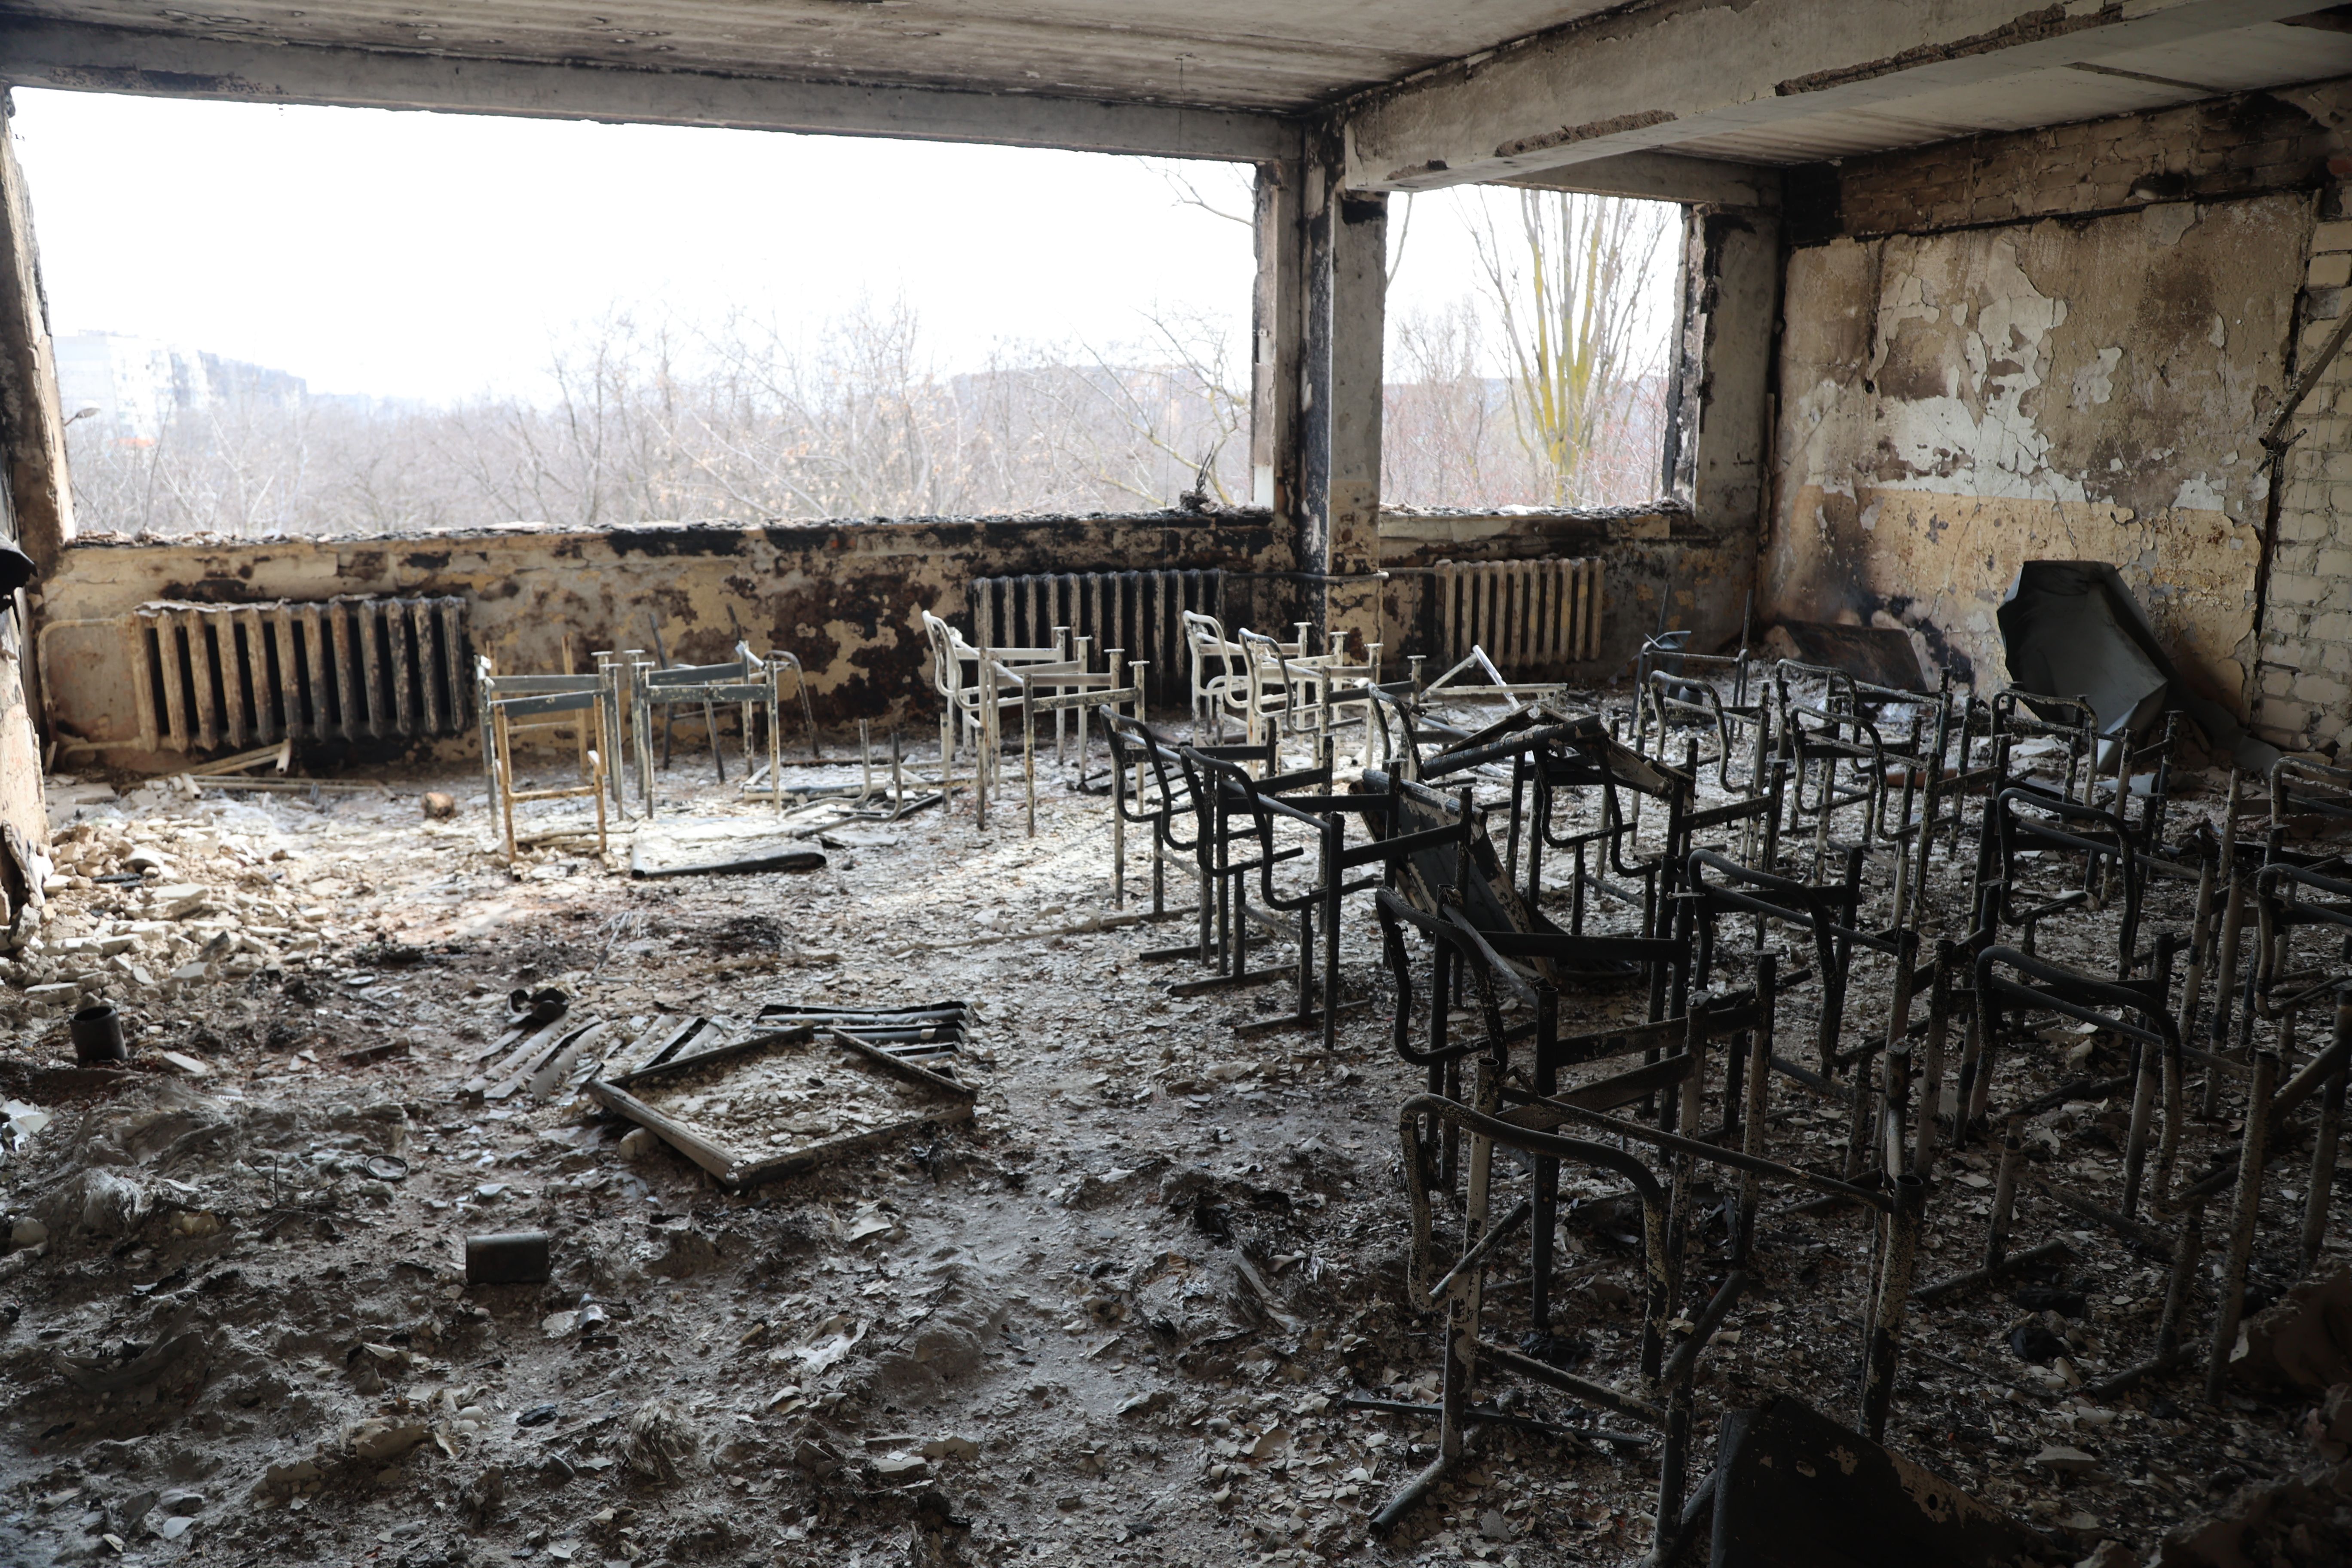   منظر للمدرسة المتضررة بعد قصف مدينة ماريوبول الأوكرانية الخاضعة لسيطرة الجيش الروسي والانفصاليين الموالين لروسيا ، في 29 مارس.